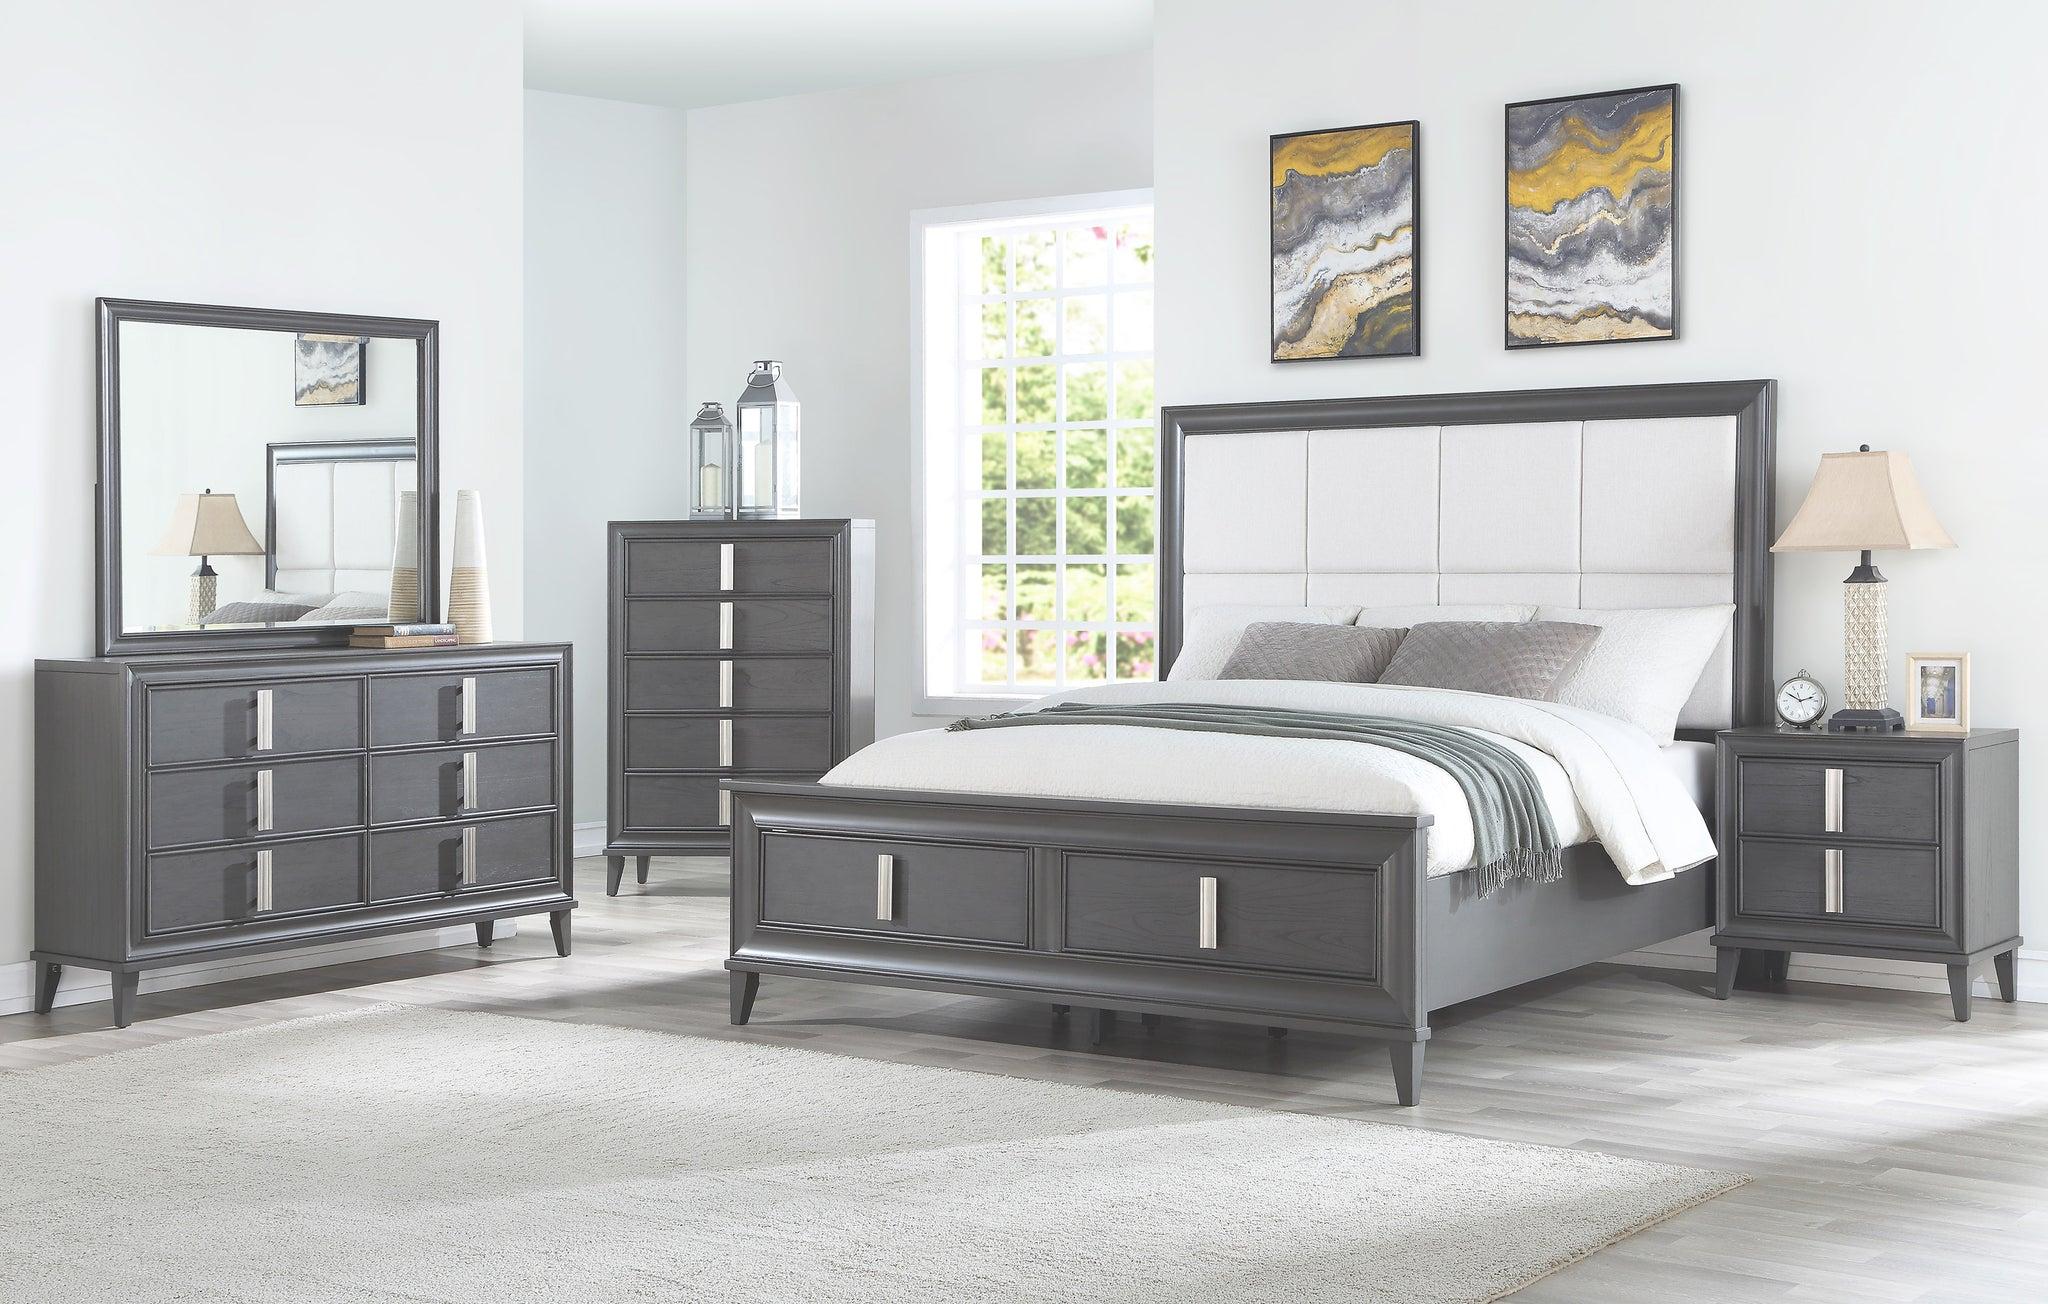 Contemporary, Modern Storage Bedroom Set LORRAINE 8171-07CK-Set-5 in Dark Gray, Cream Fabric